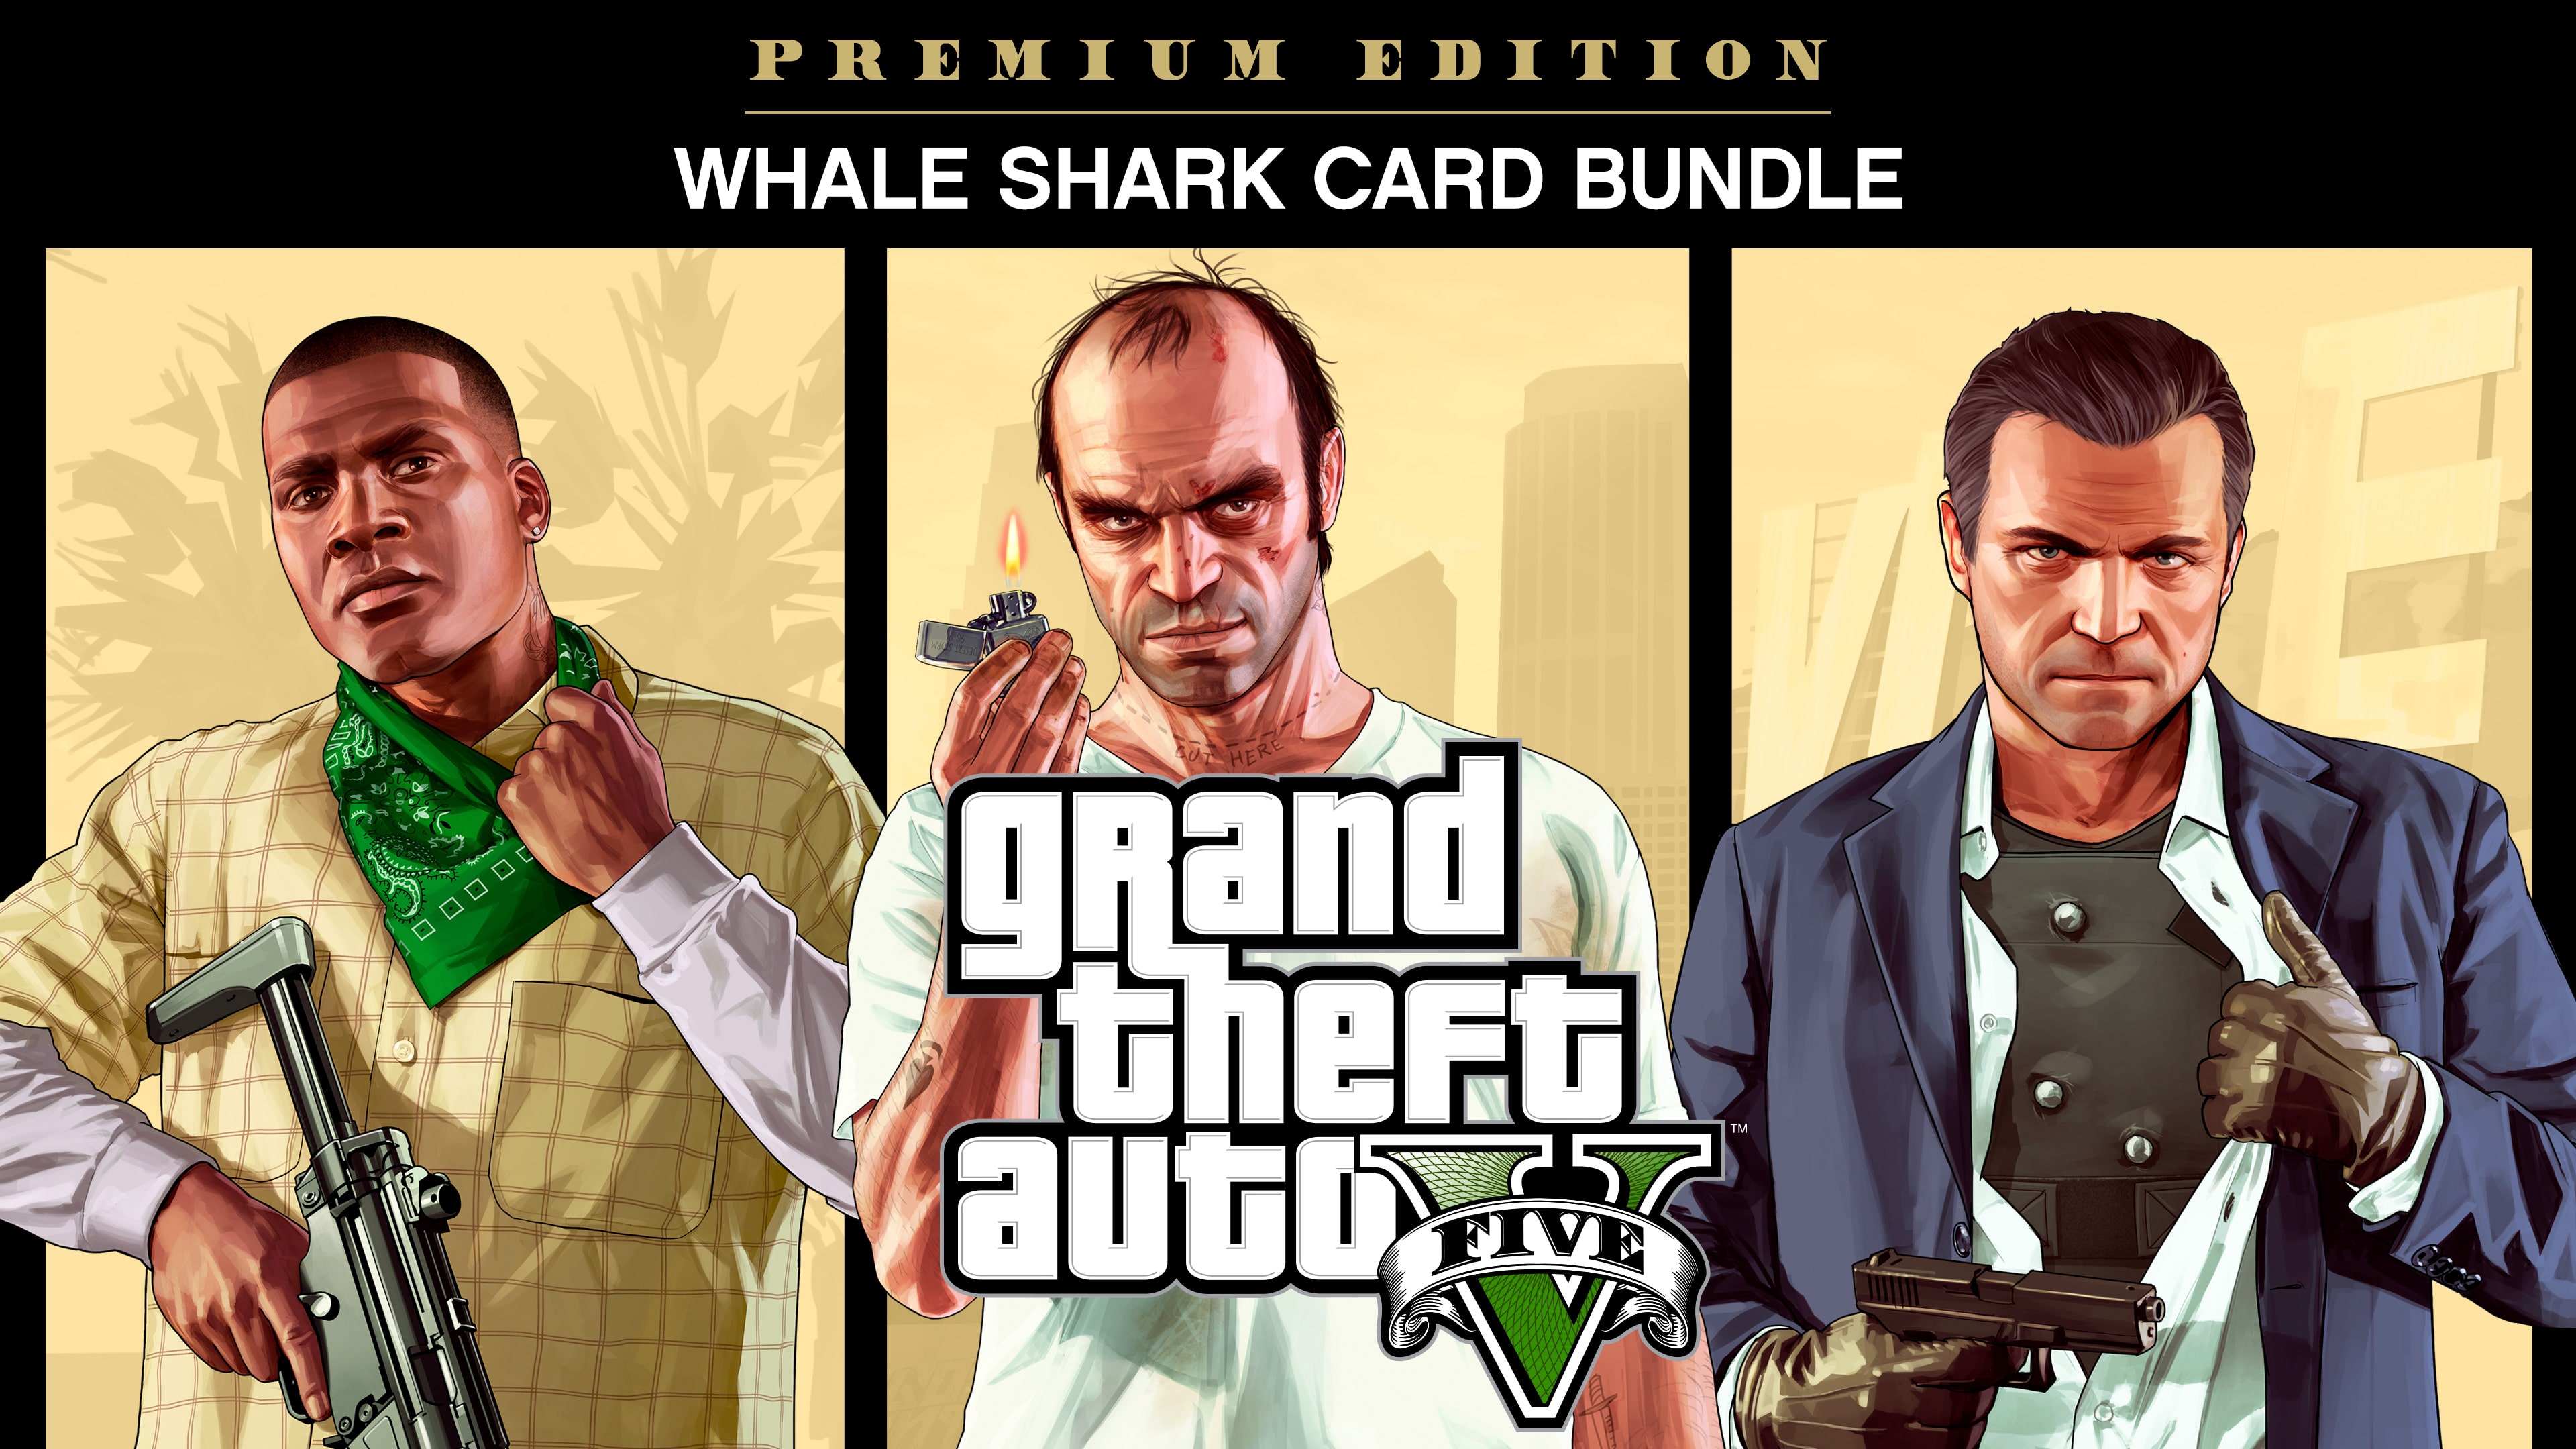 Pacchetto Grand Theft Auto V: Premium Edition + carta prepagata Whale shark